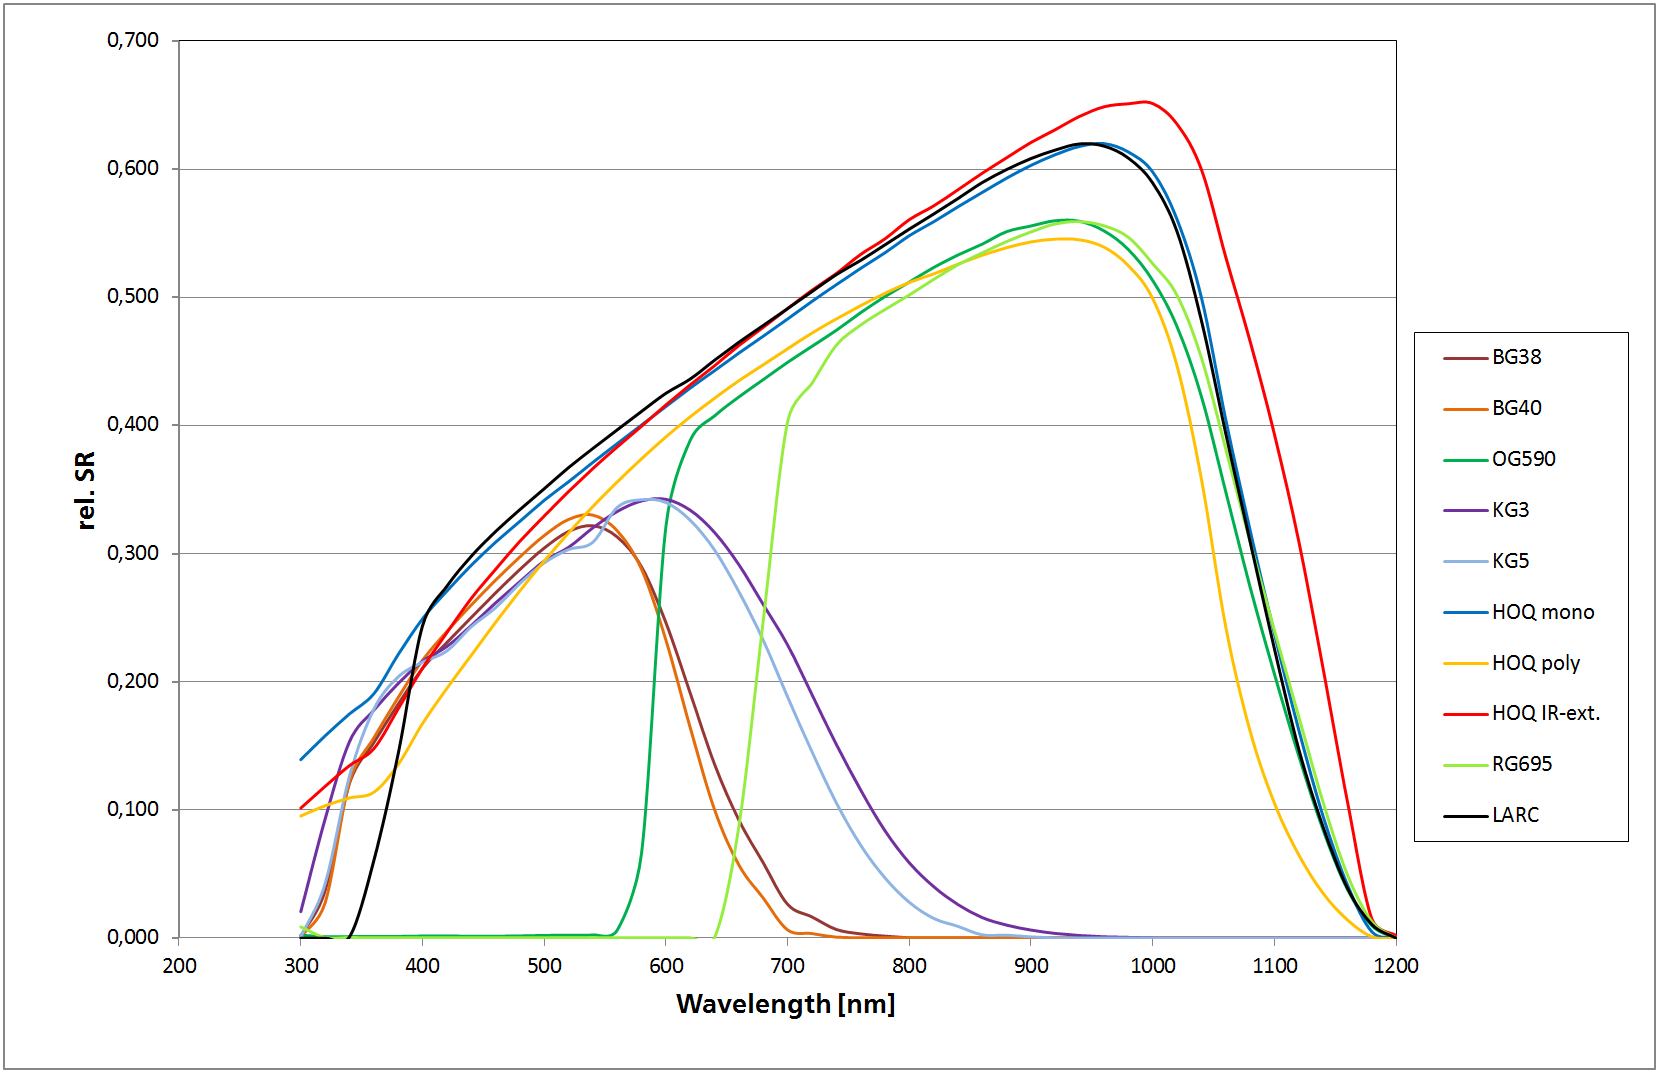 Spektrale Empfindlichkeit (Relative Spectral Response) verschiedener Referenzzellen im Vergleich mit dem neuen Typ (HOQ IR-ext.). 